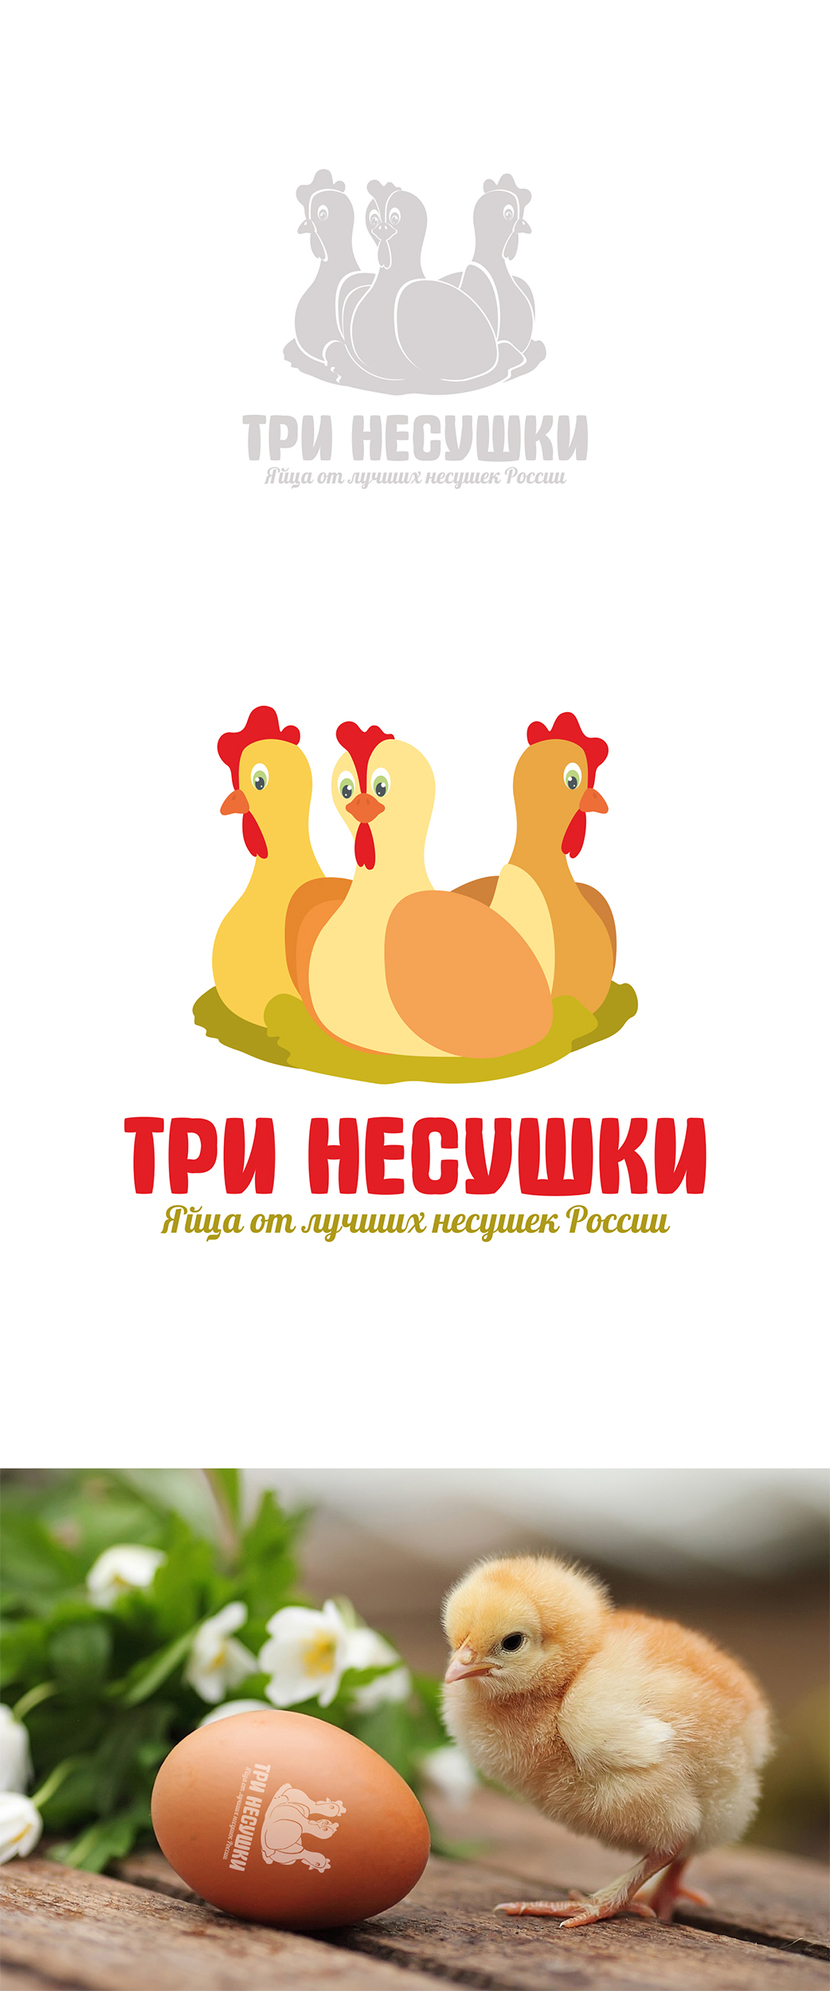 + - Разработка логотипа и фирменного стиля для нового бренда куриных яиц "Три несушки"